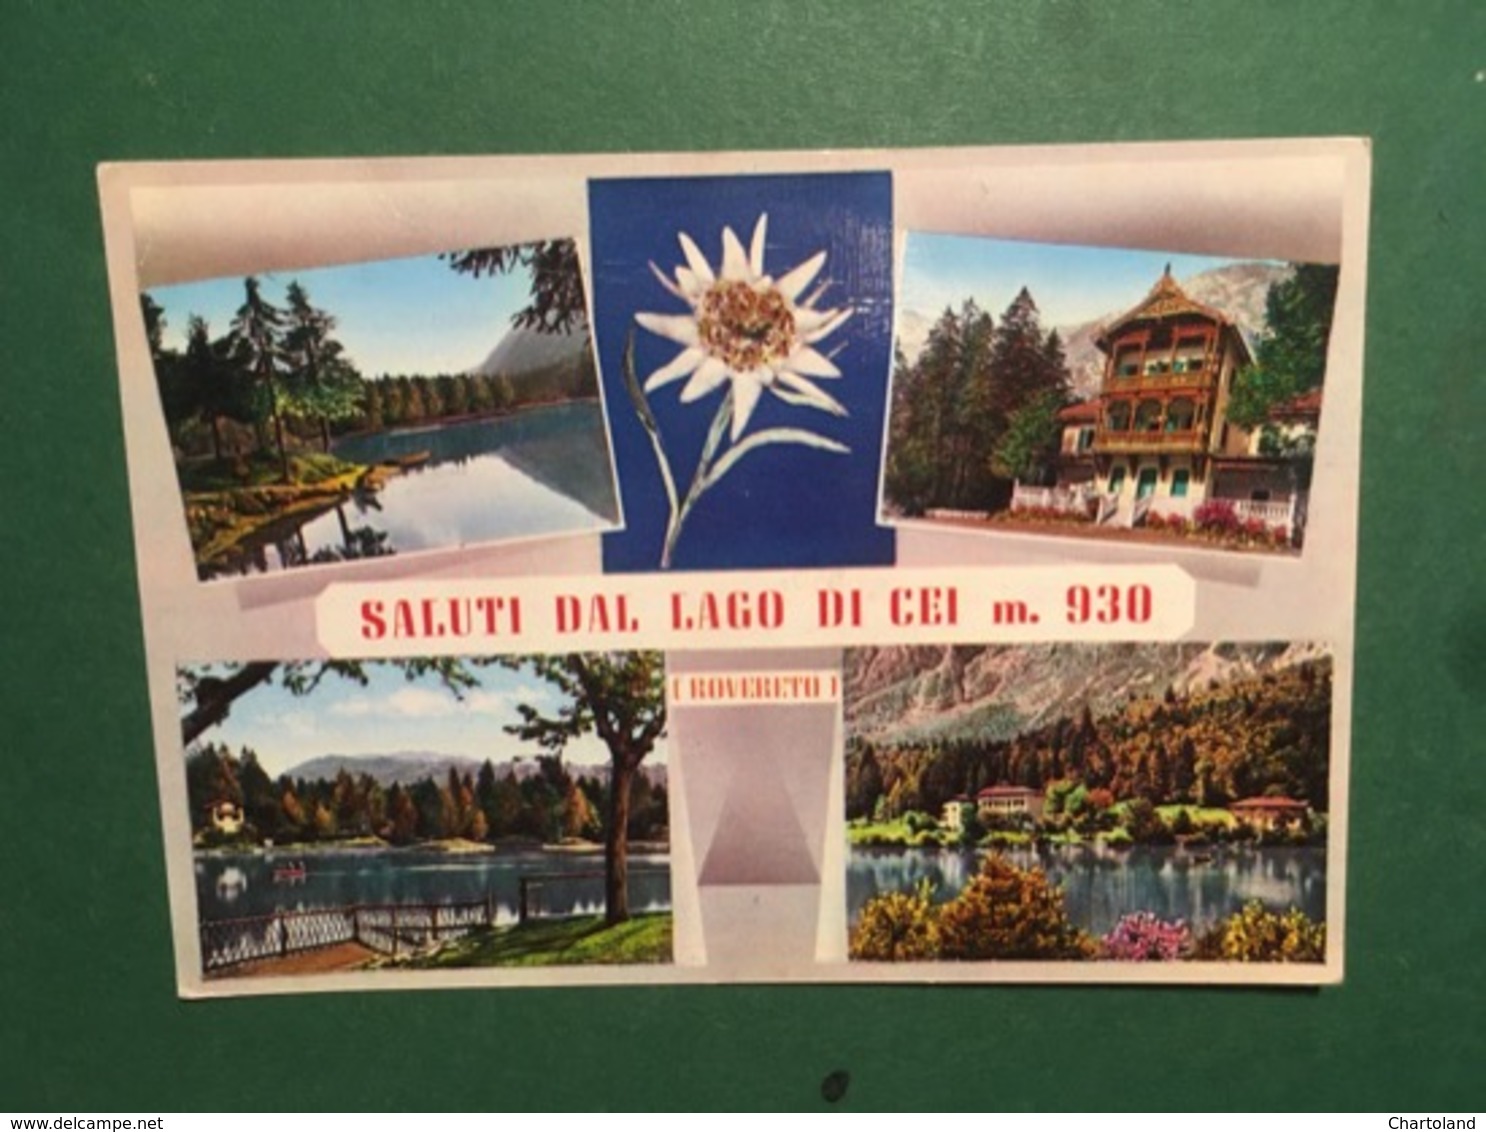 Cartolina Salti Dal Lago Di Cei - Rovereto - 1966 - Trento